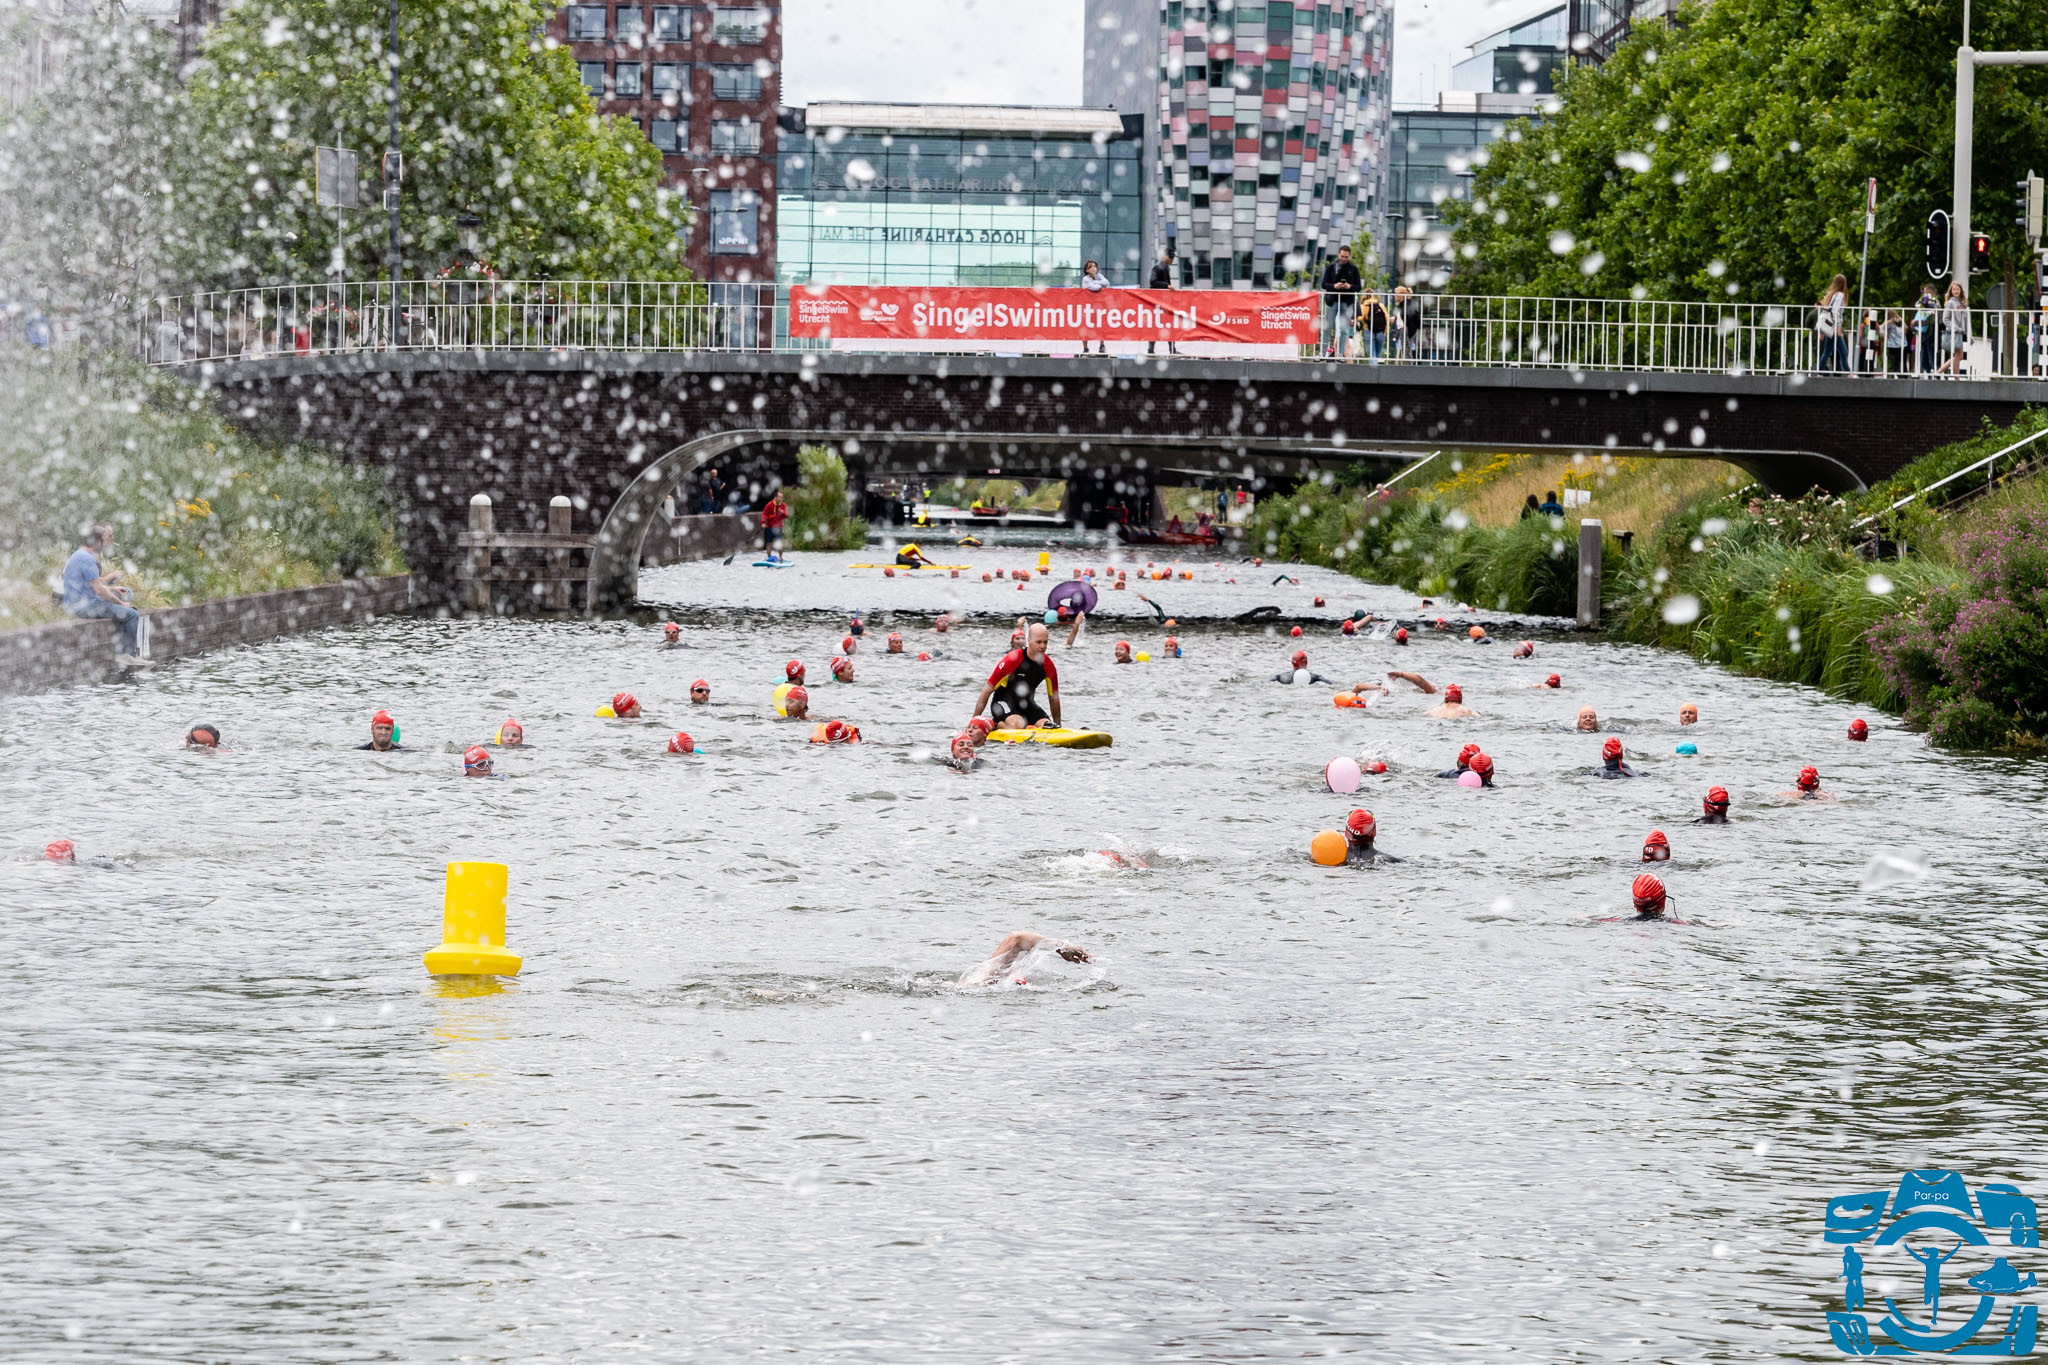 Utrecht Singel Swim